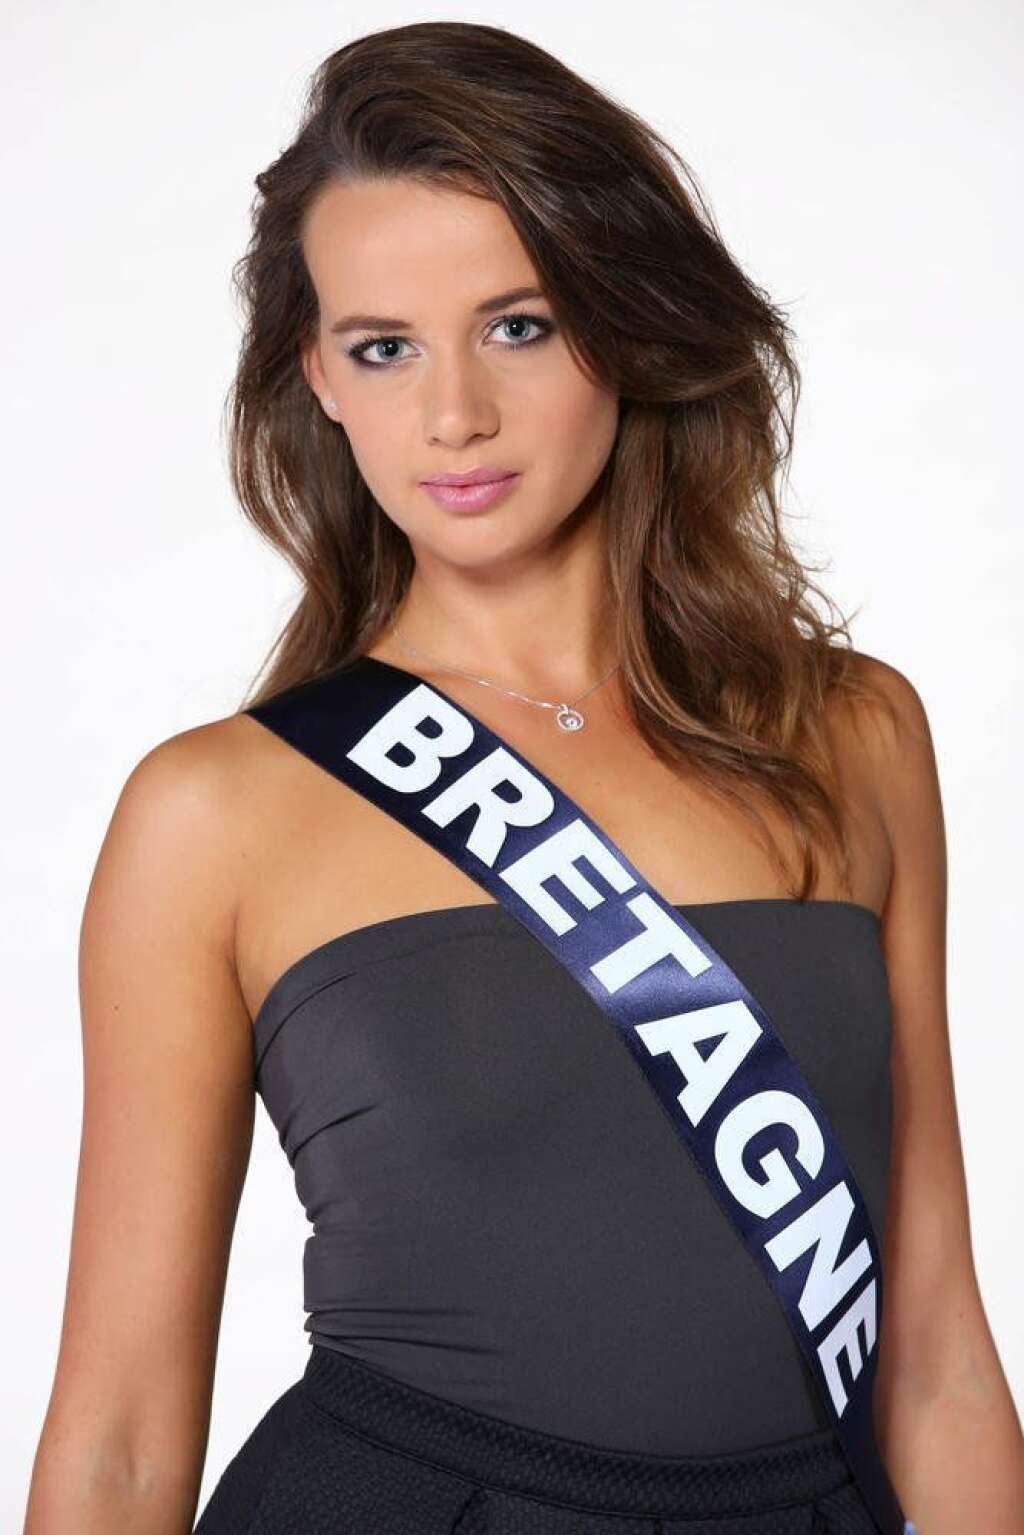 Miss Bretagne: Maïlys Bonnet - 20 ans, étudiante en troisième année de licence de Sciences de l'Information.